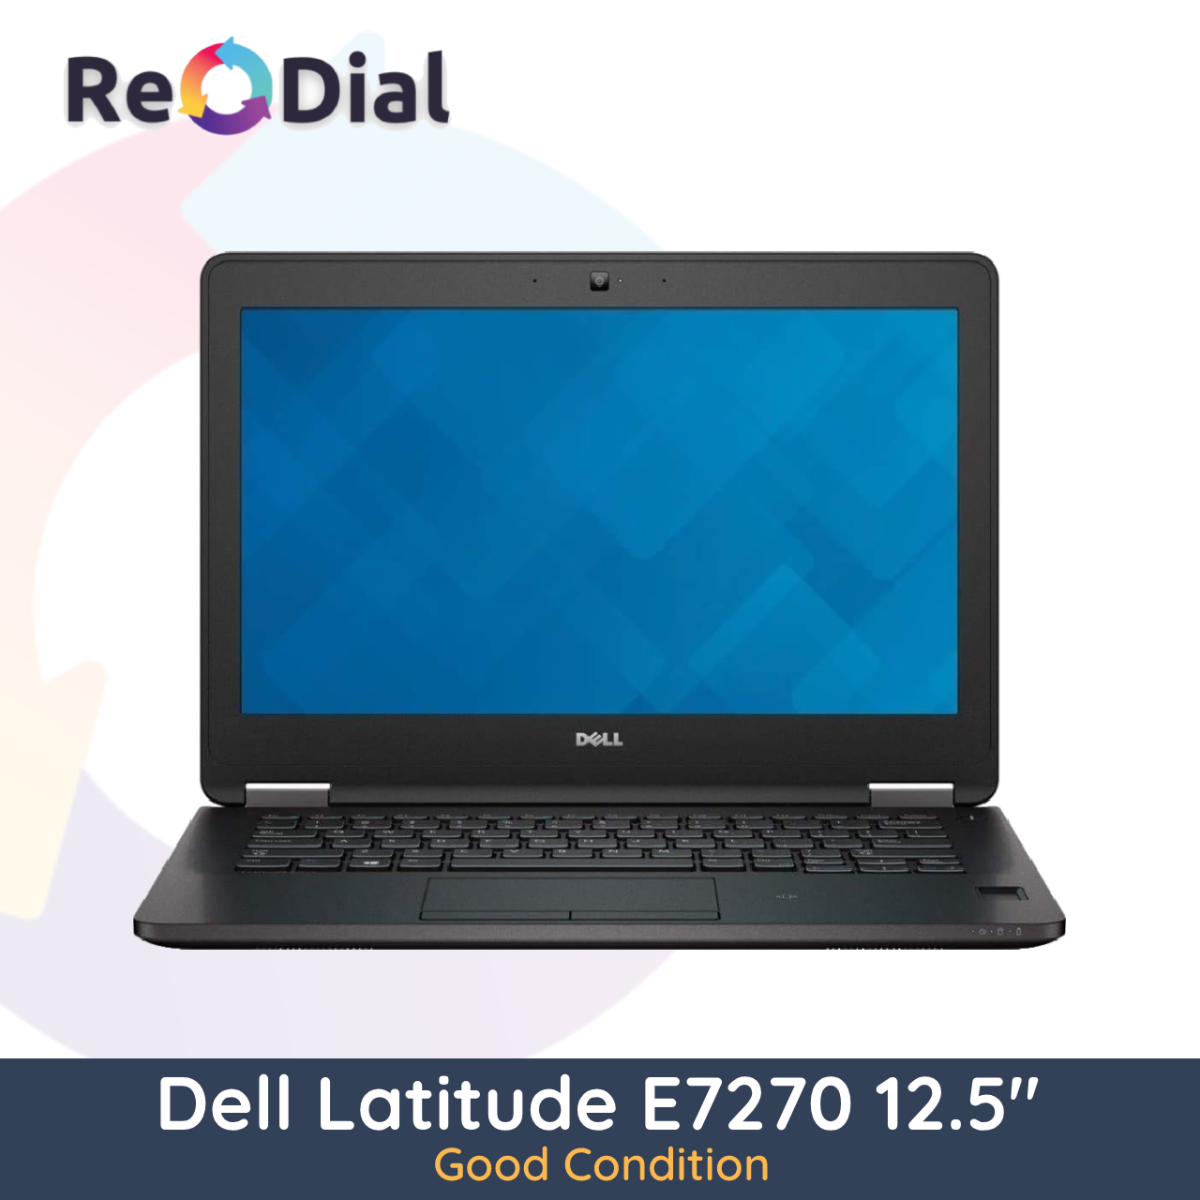 Dell Latitude E7270 12.5" Laptop i5-6300U 256GB 8GB RAM - Good Condition